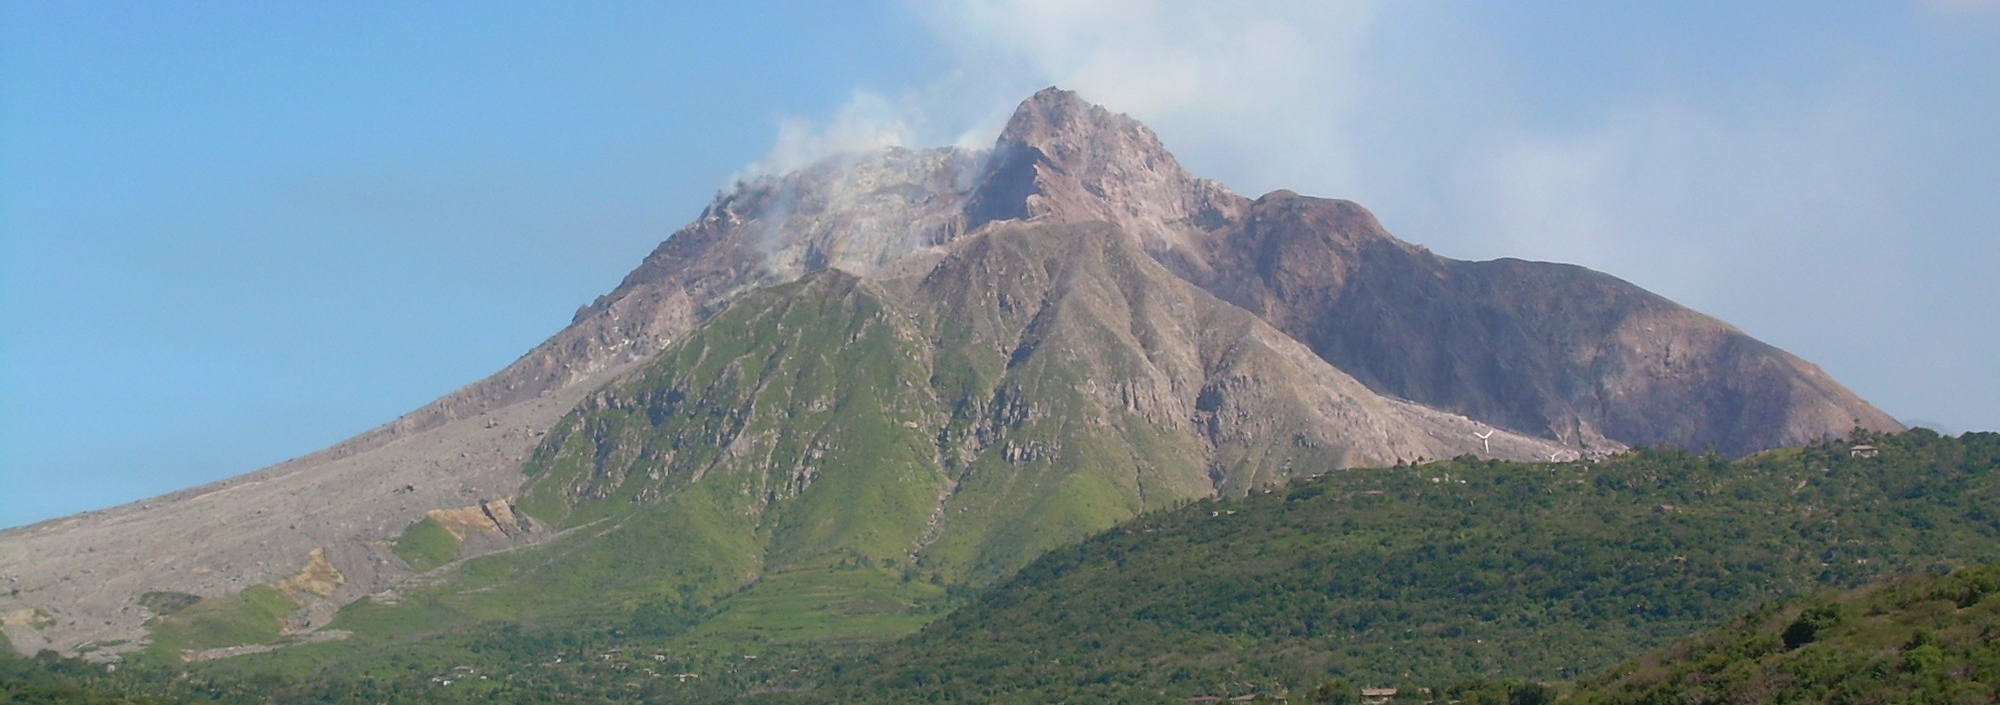 Blick auf den Vulkan Soufriere auf Montserrat in der Karibik